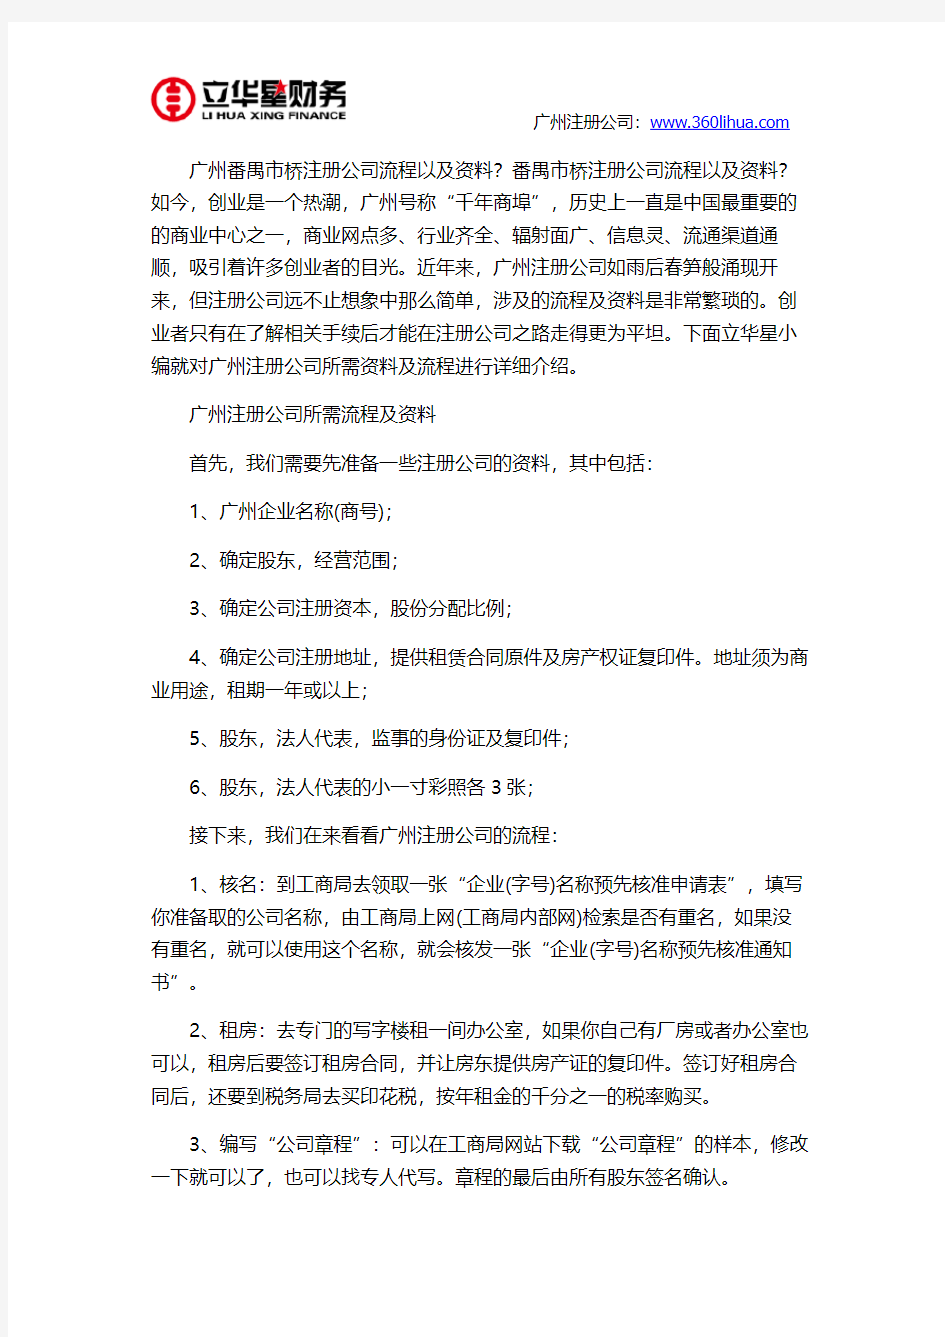 广州番禺市桥注册公司流程以及资料